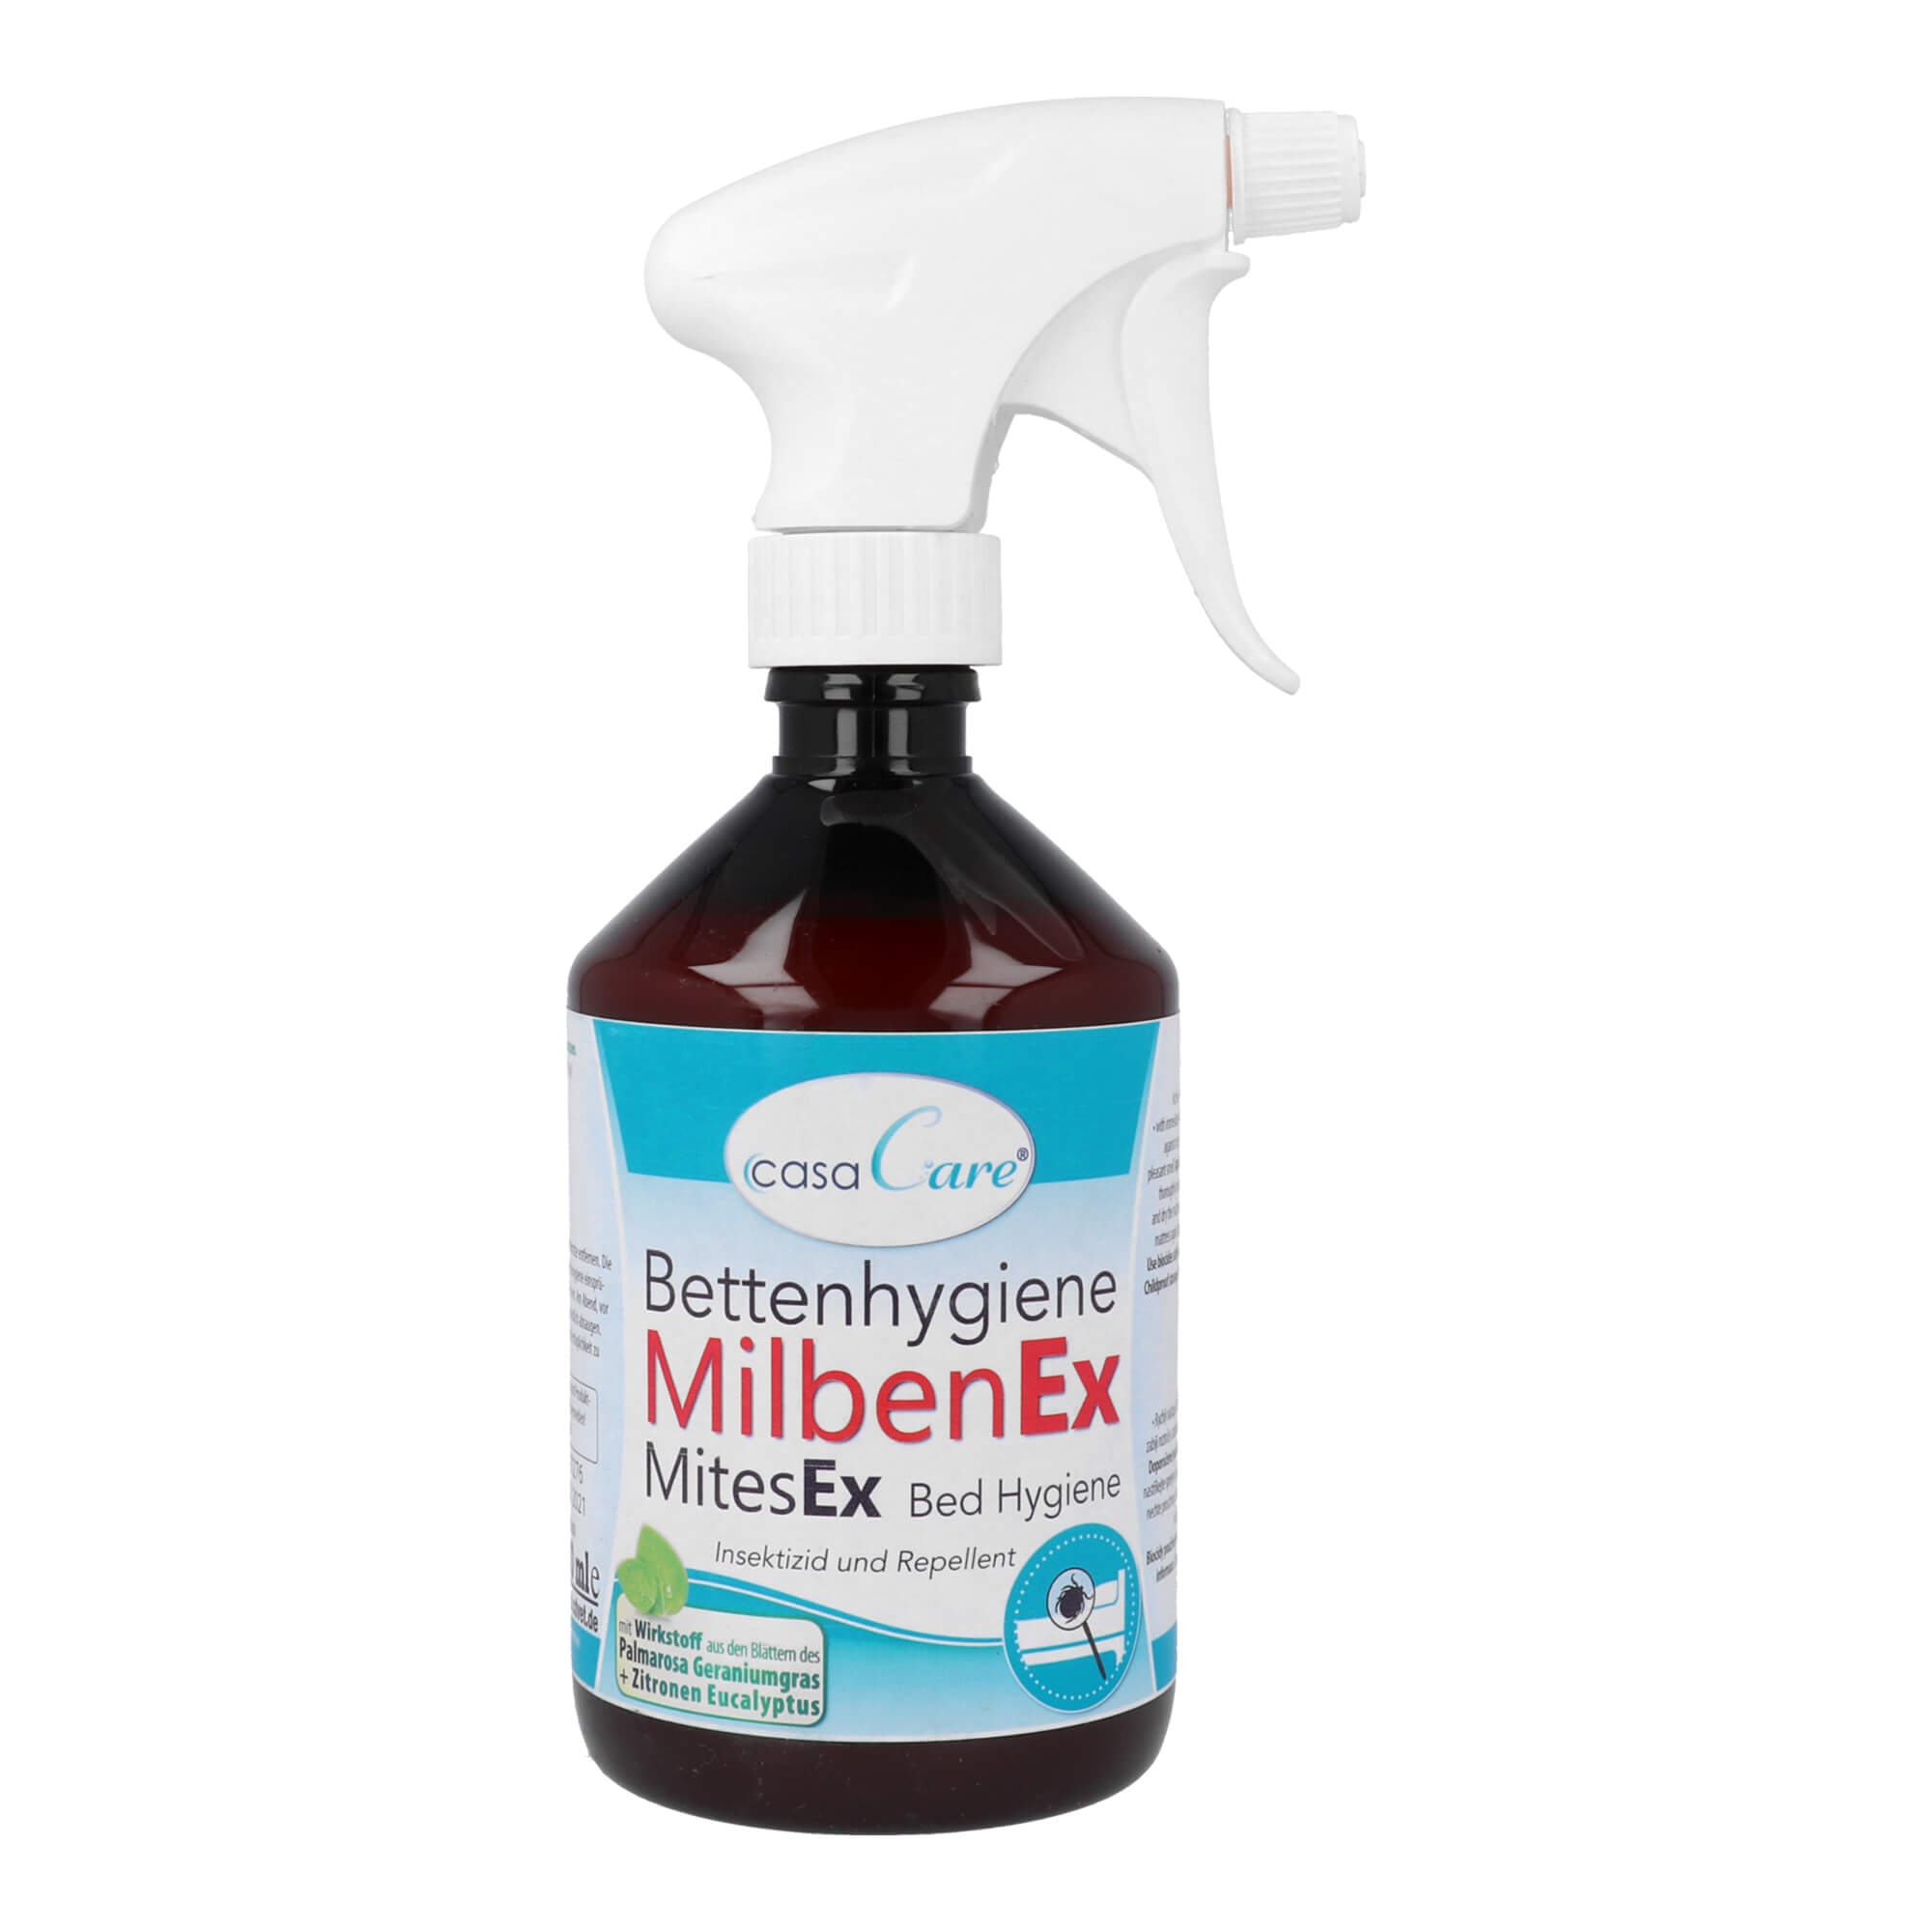 Spray-Suspension zur Bekämpfung von Milben in Matratzen.